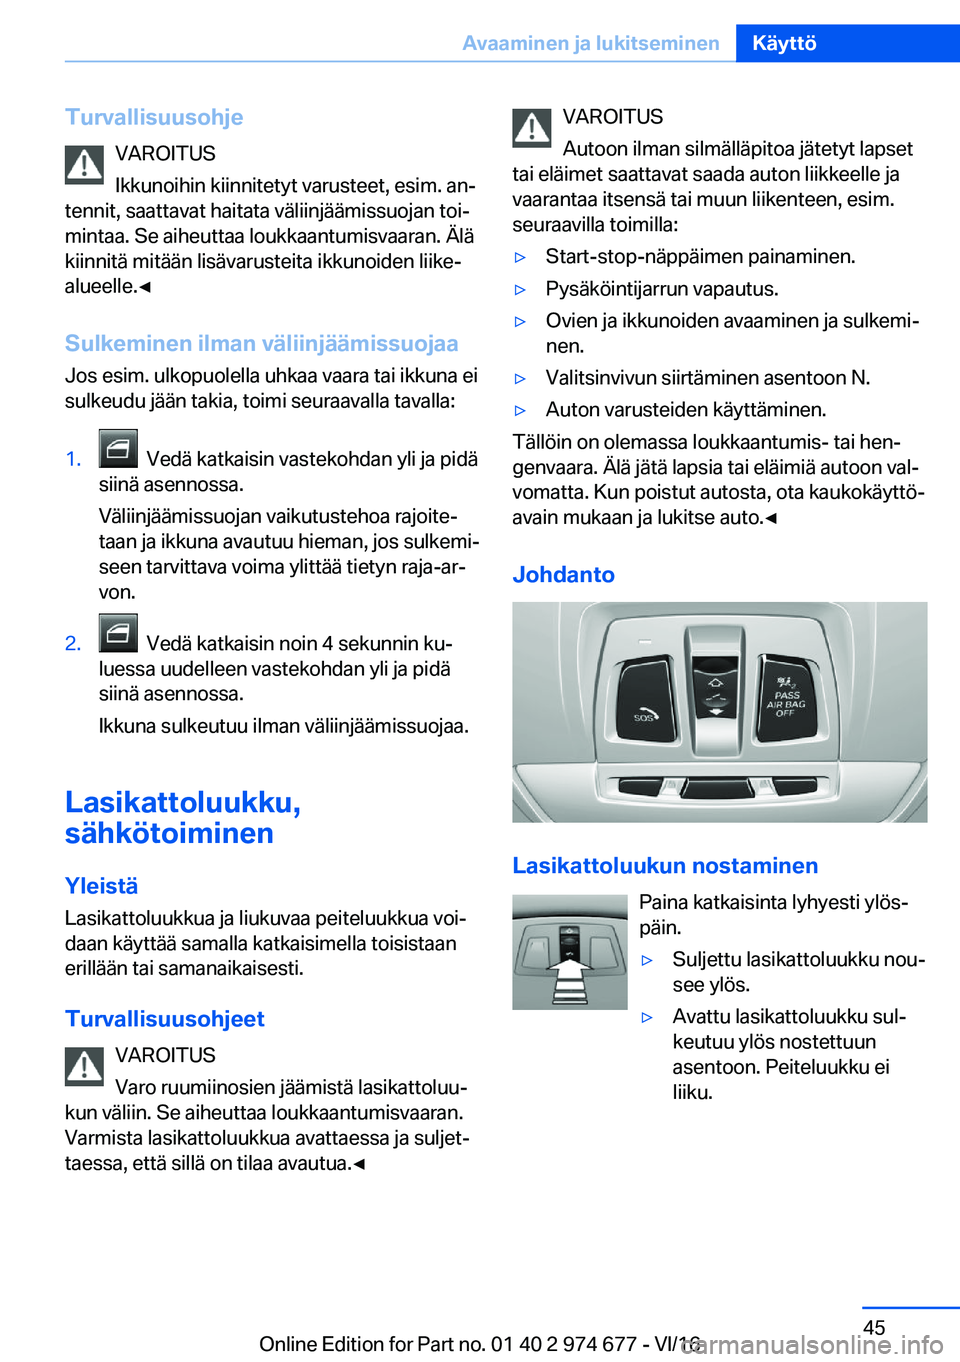 BMW M2 2017  Omistajan Käsikirja (in Finnish) �T�u�r�v�a�l�l�i�s�u�u�s�o�h�j�e�V�A�R�O�I�T�U�S
�I�k�k�u�n�o�i�h�i�n� �k�i�i�n�n�i�t�e�t�y�t� �v�a�r�u�s�t�e�e�t�,� �e�s�i�m�.� �a�nj
�t�e�n�n�i�t�,� �s�a�a�t�t�a�v�a�t� �h�a�i�t�a�t�a� �v�